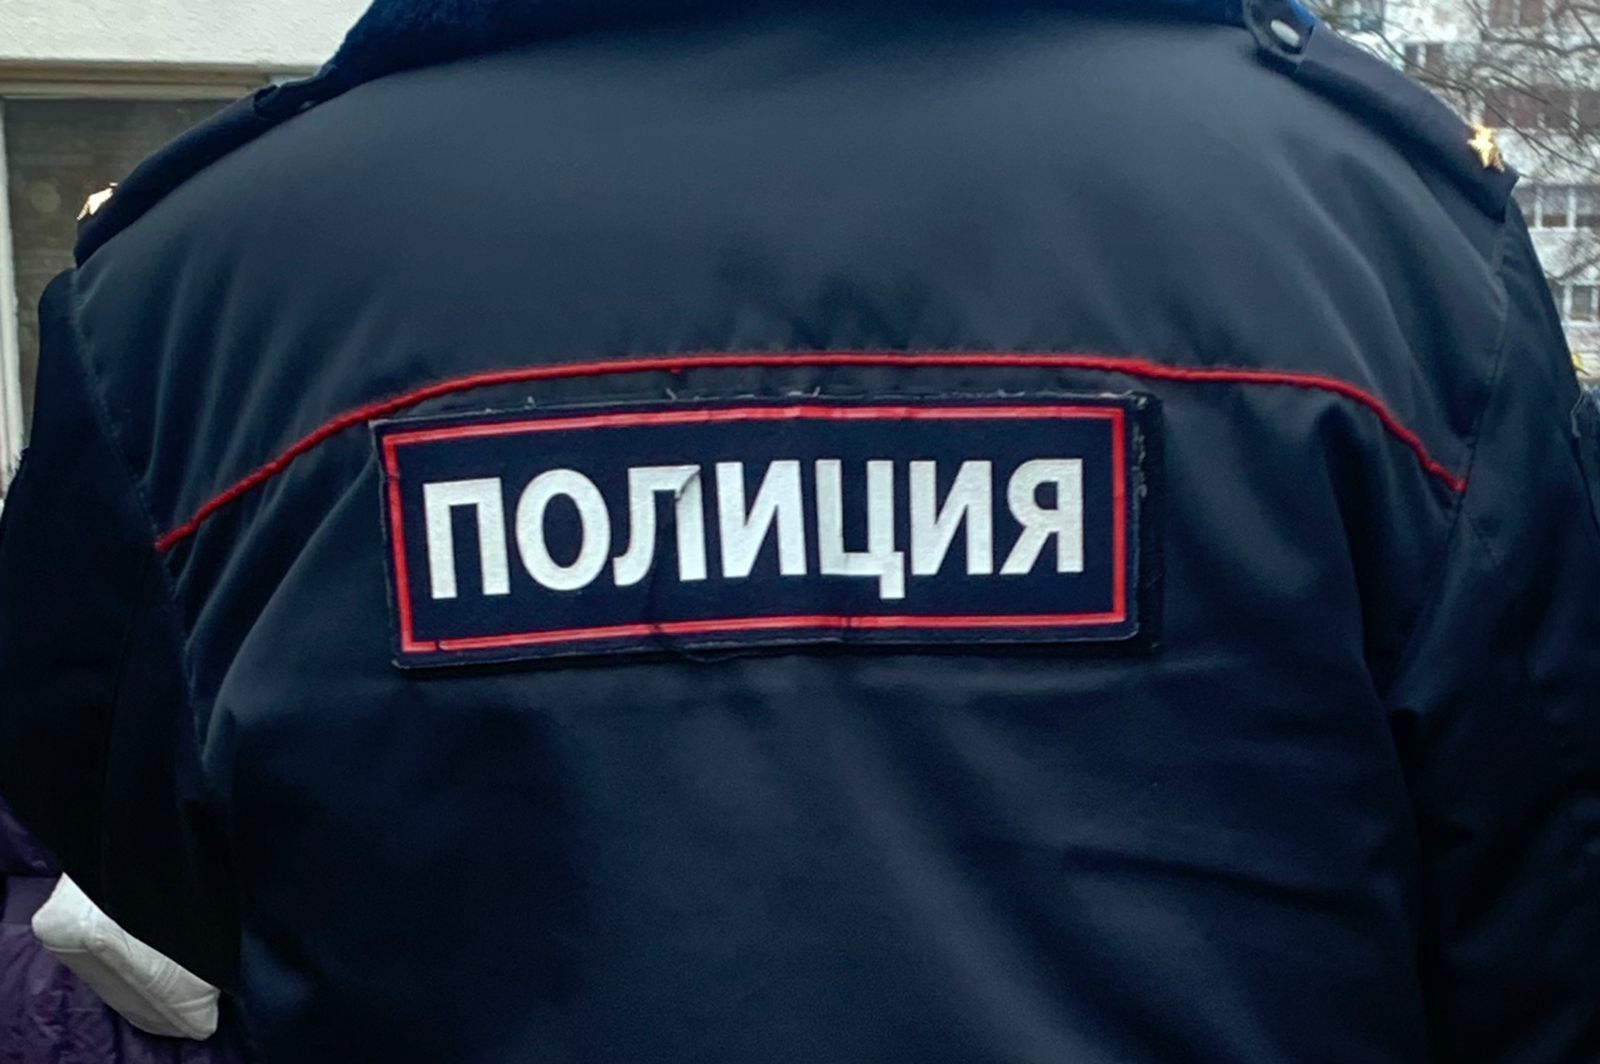 В Татарстане мужчина сковородкой ударил дебошира, напавшего на него ножом